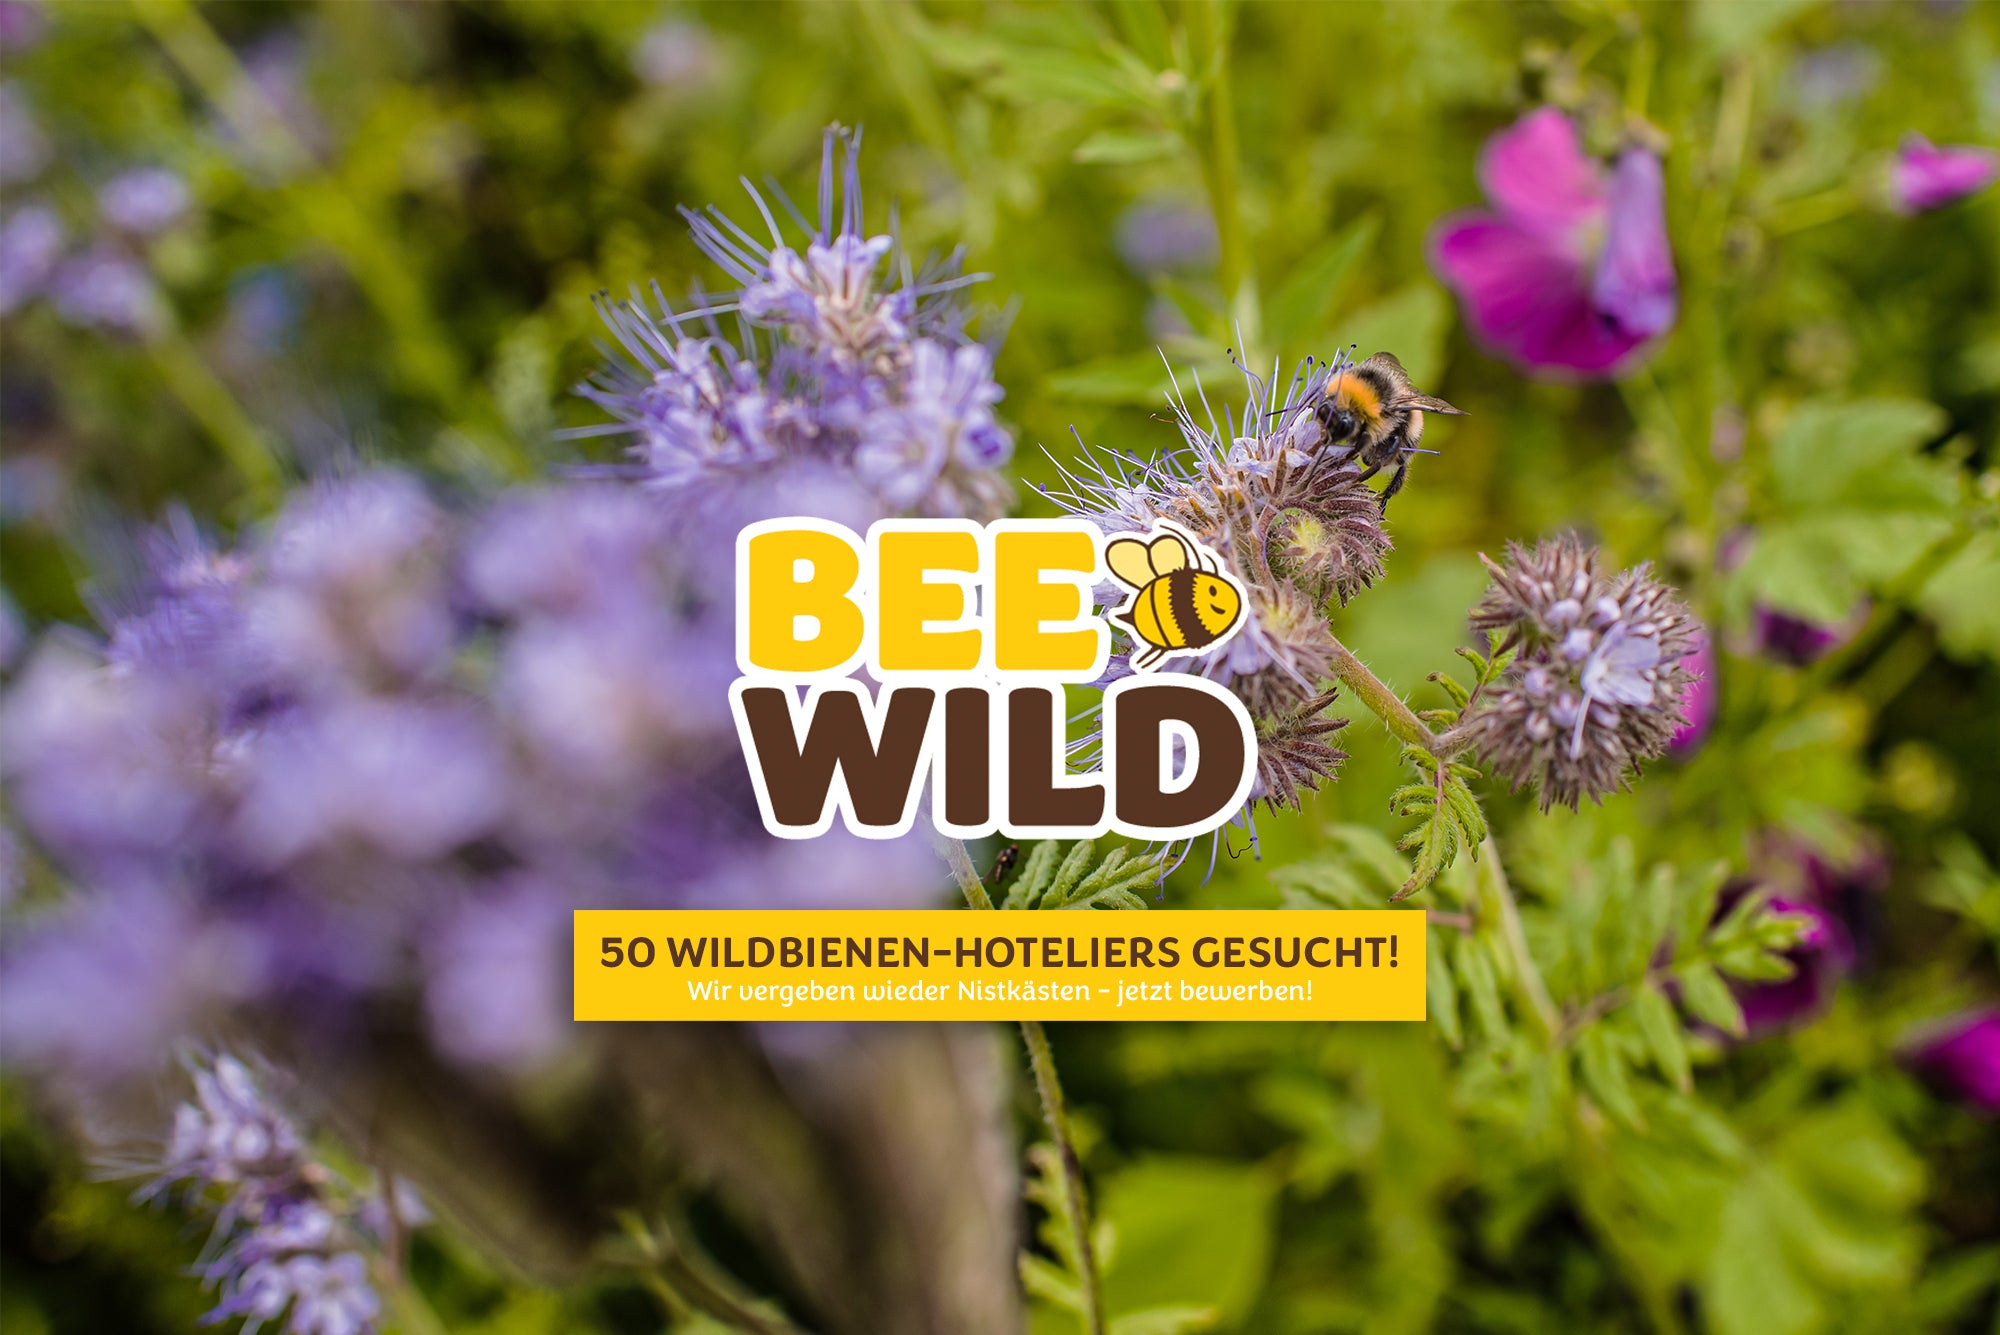 Barnhouse Bee Wild: Wir suchen 50  Wildbienen-Hoteliers!